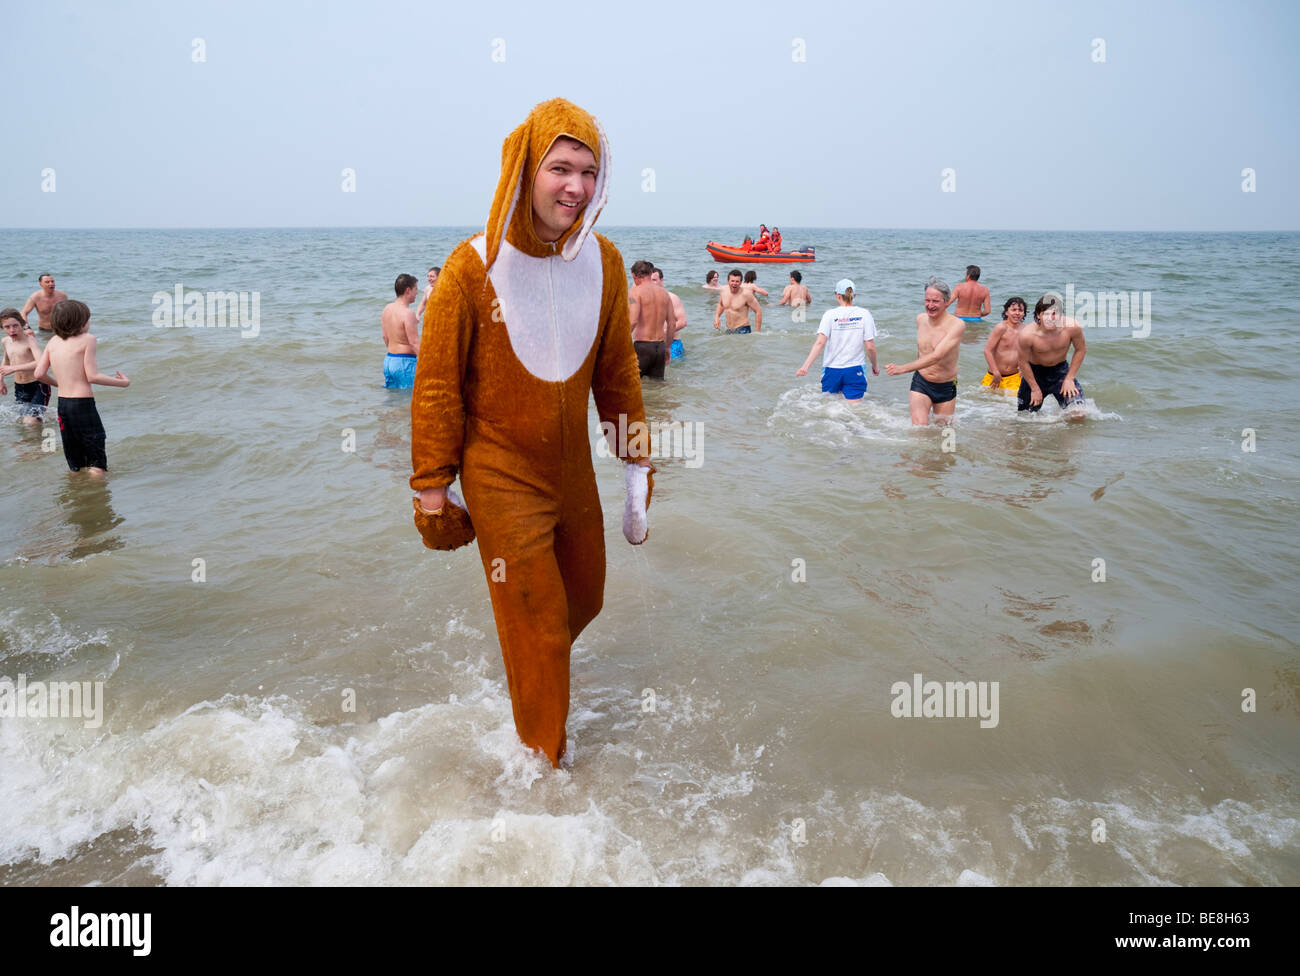 Un jeune homme habillé comme un lapin de Pâques se trouve dans la mer du Nord à l'Paasduik traditionnel de Pâques Pâques Renesse (plongée). Banque D'Images